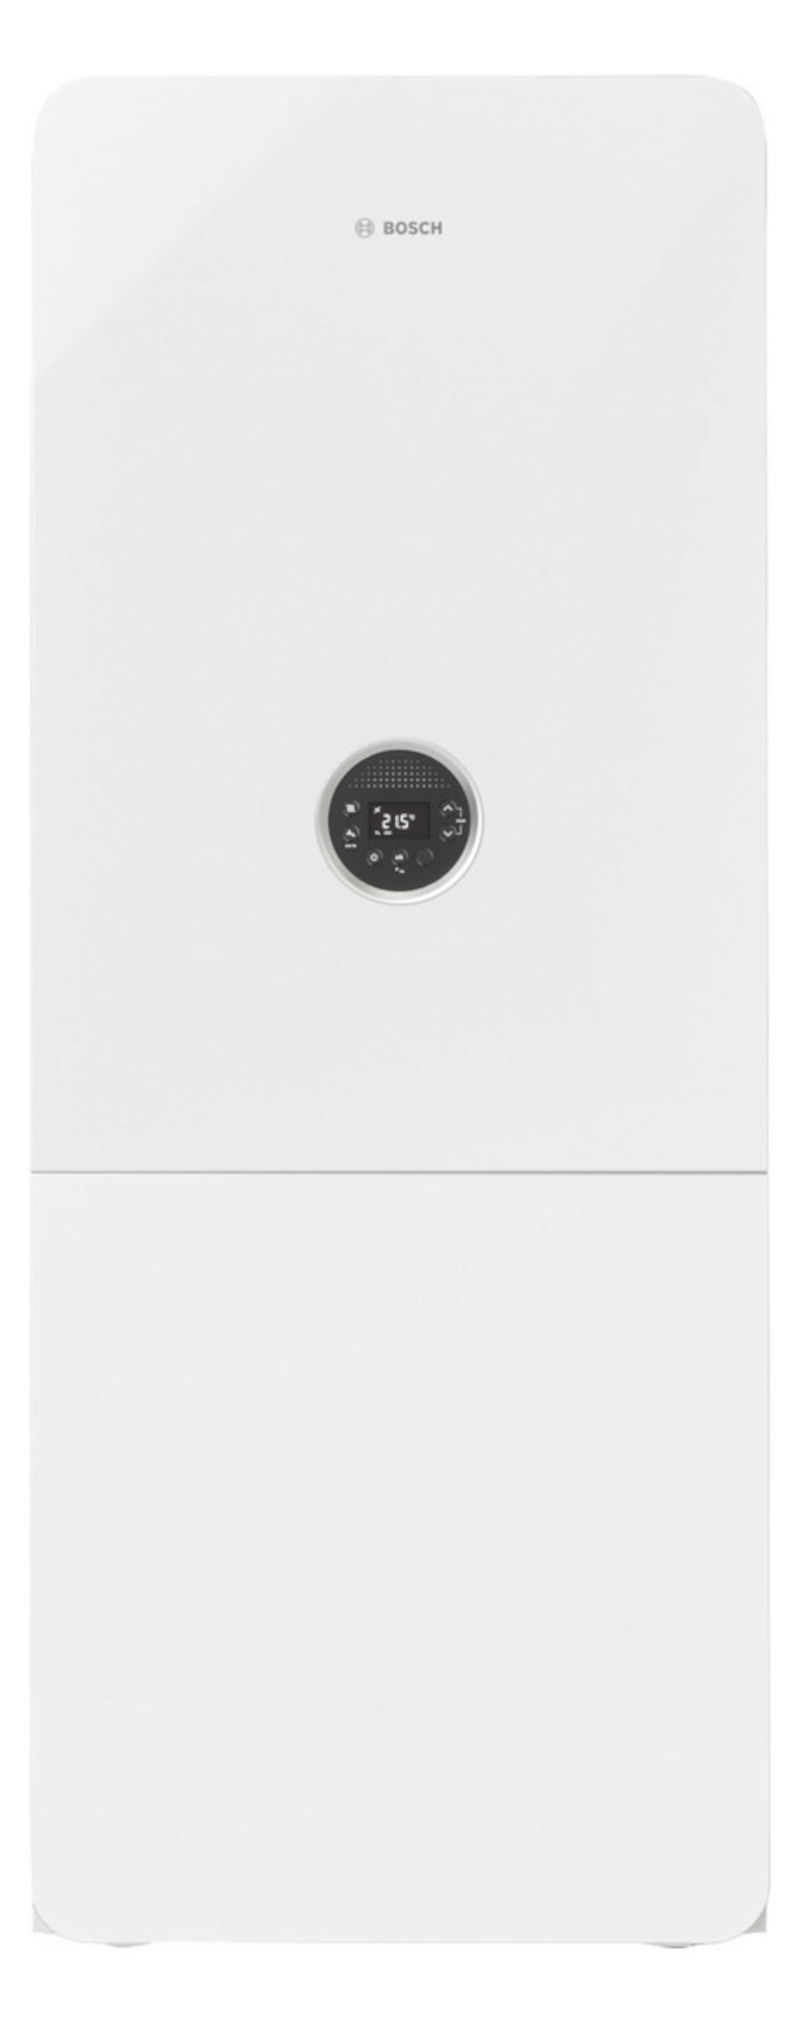 Bosch GC5300i WM 24/120S, Gas-Brennwertgerät, Frontalansicht, auf weißem Hintergrund